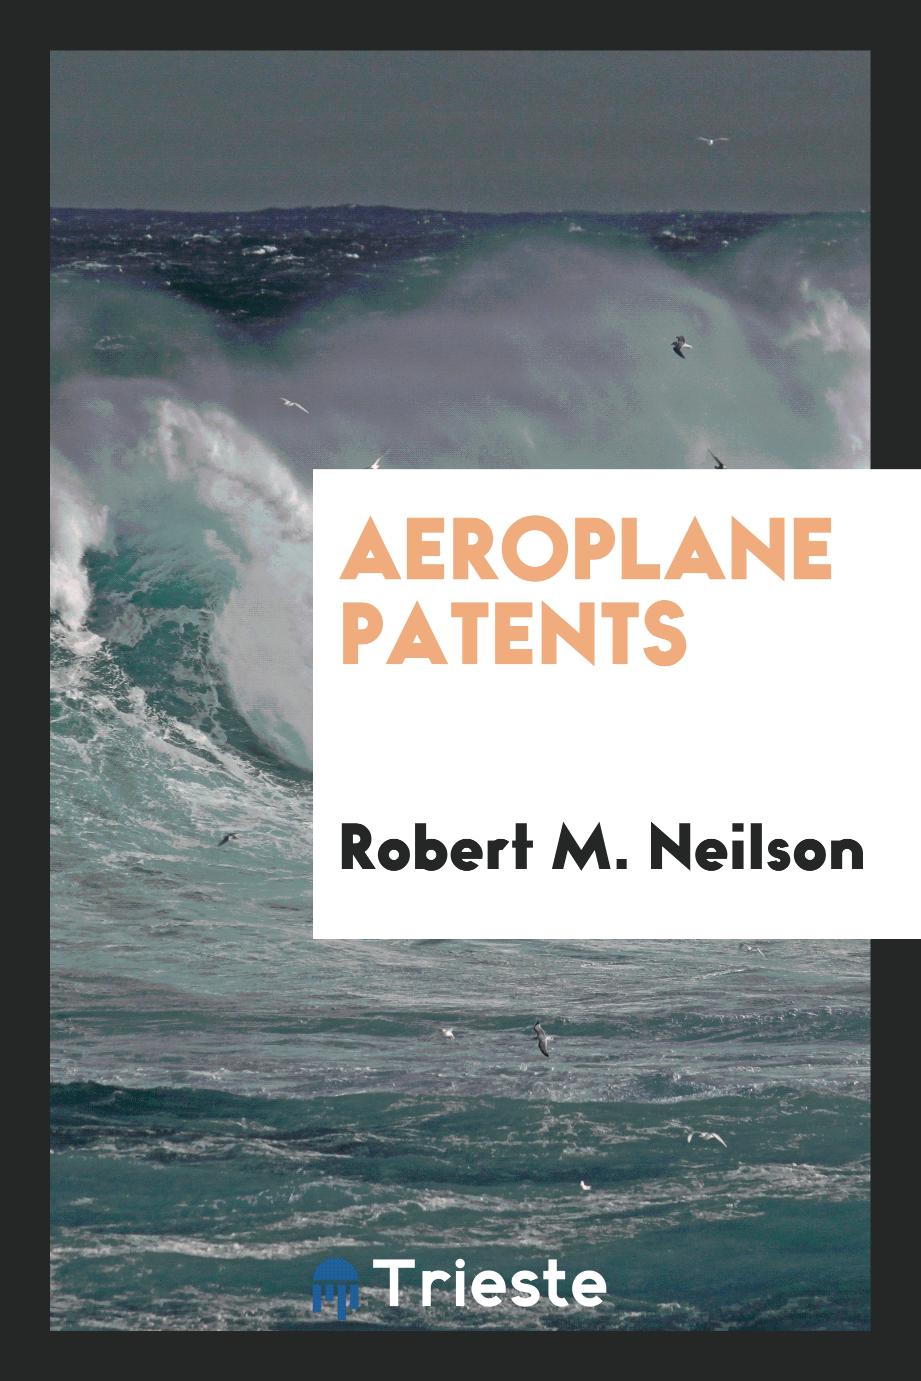 Aeroplane Patents